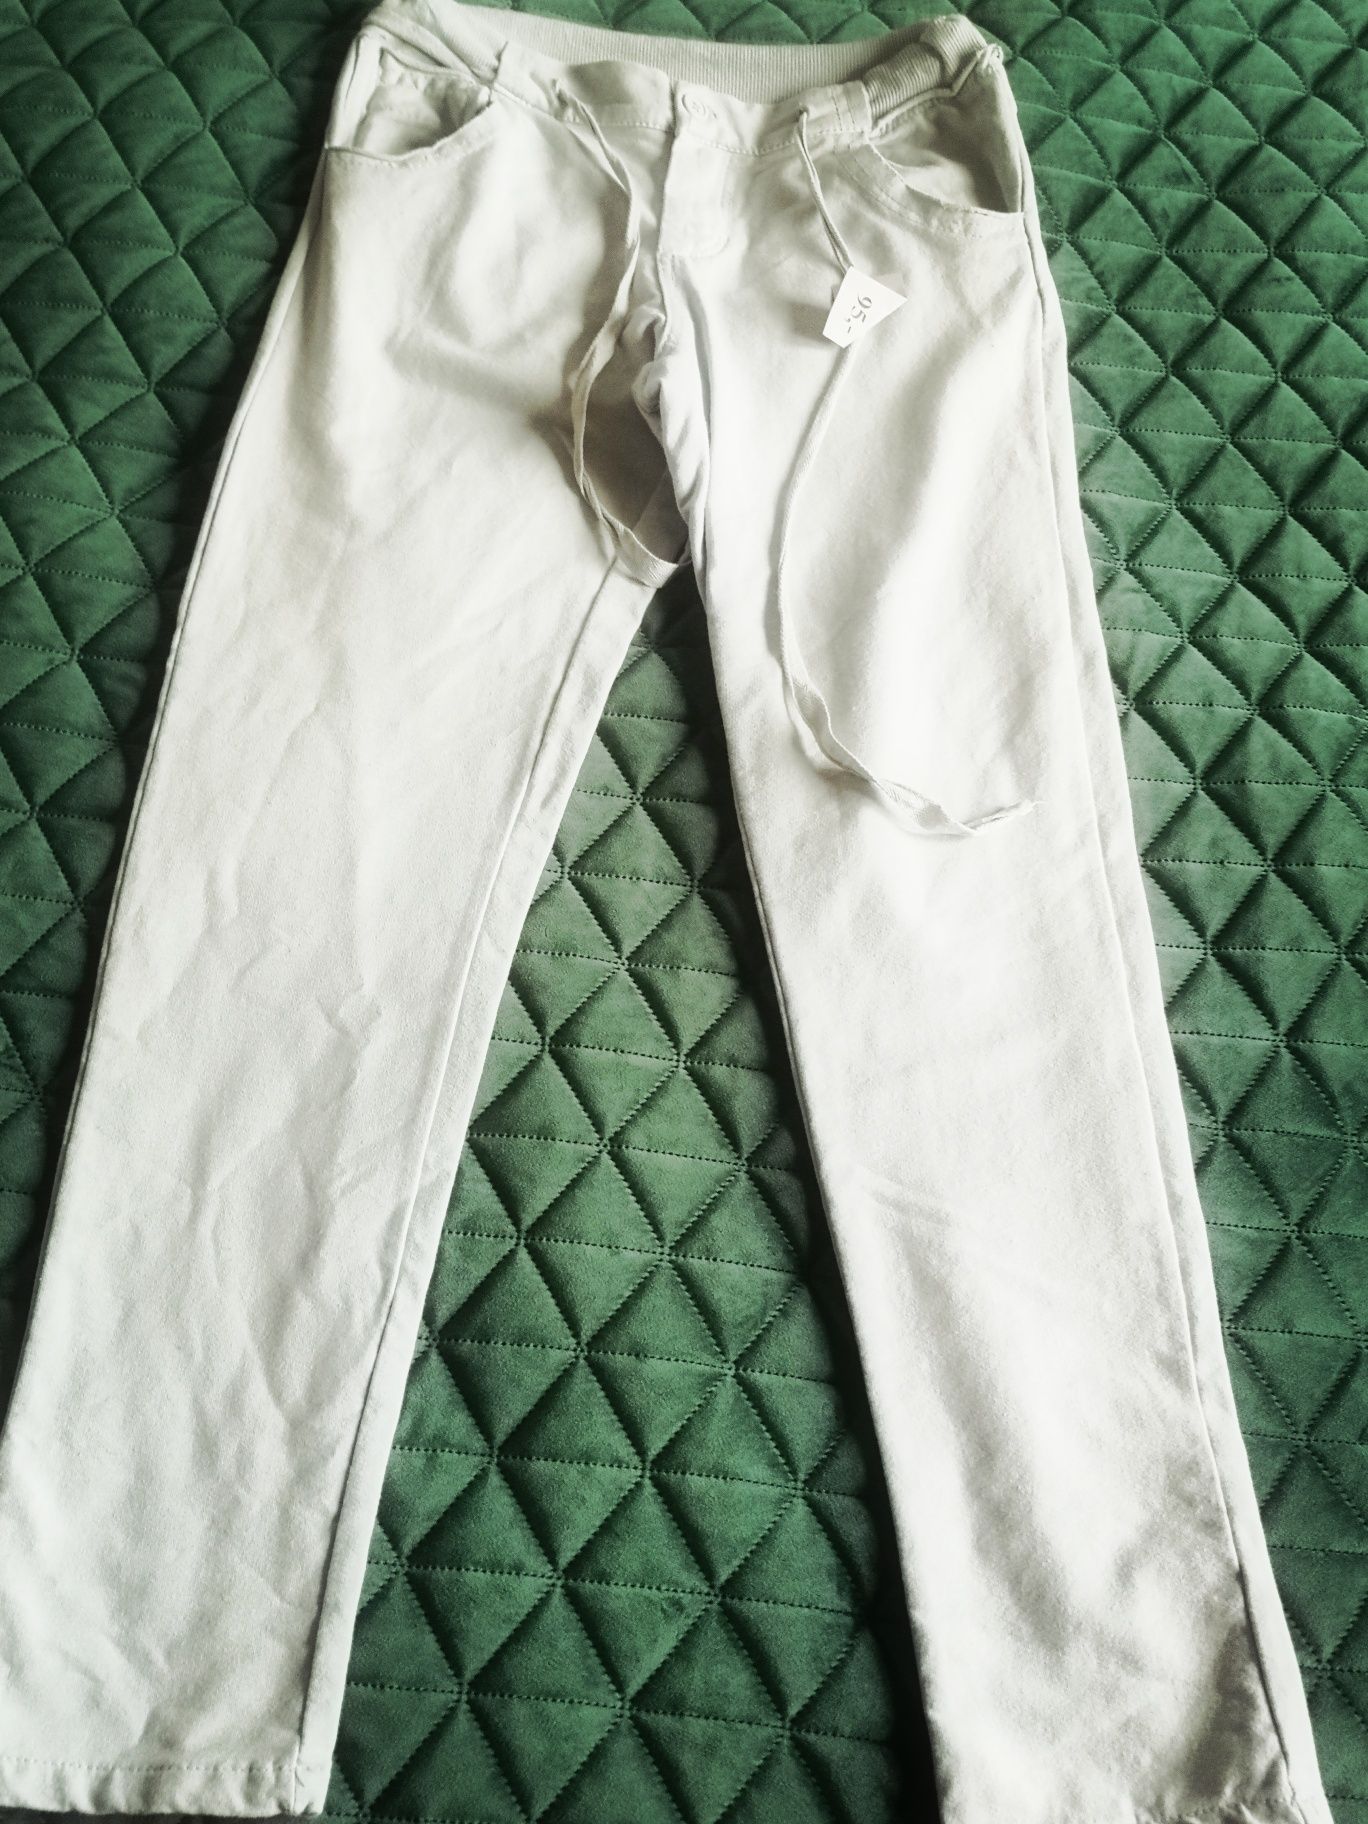 Spodnie dresowe porządne damskie Made 38 M in Italy jasne Italy